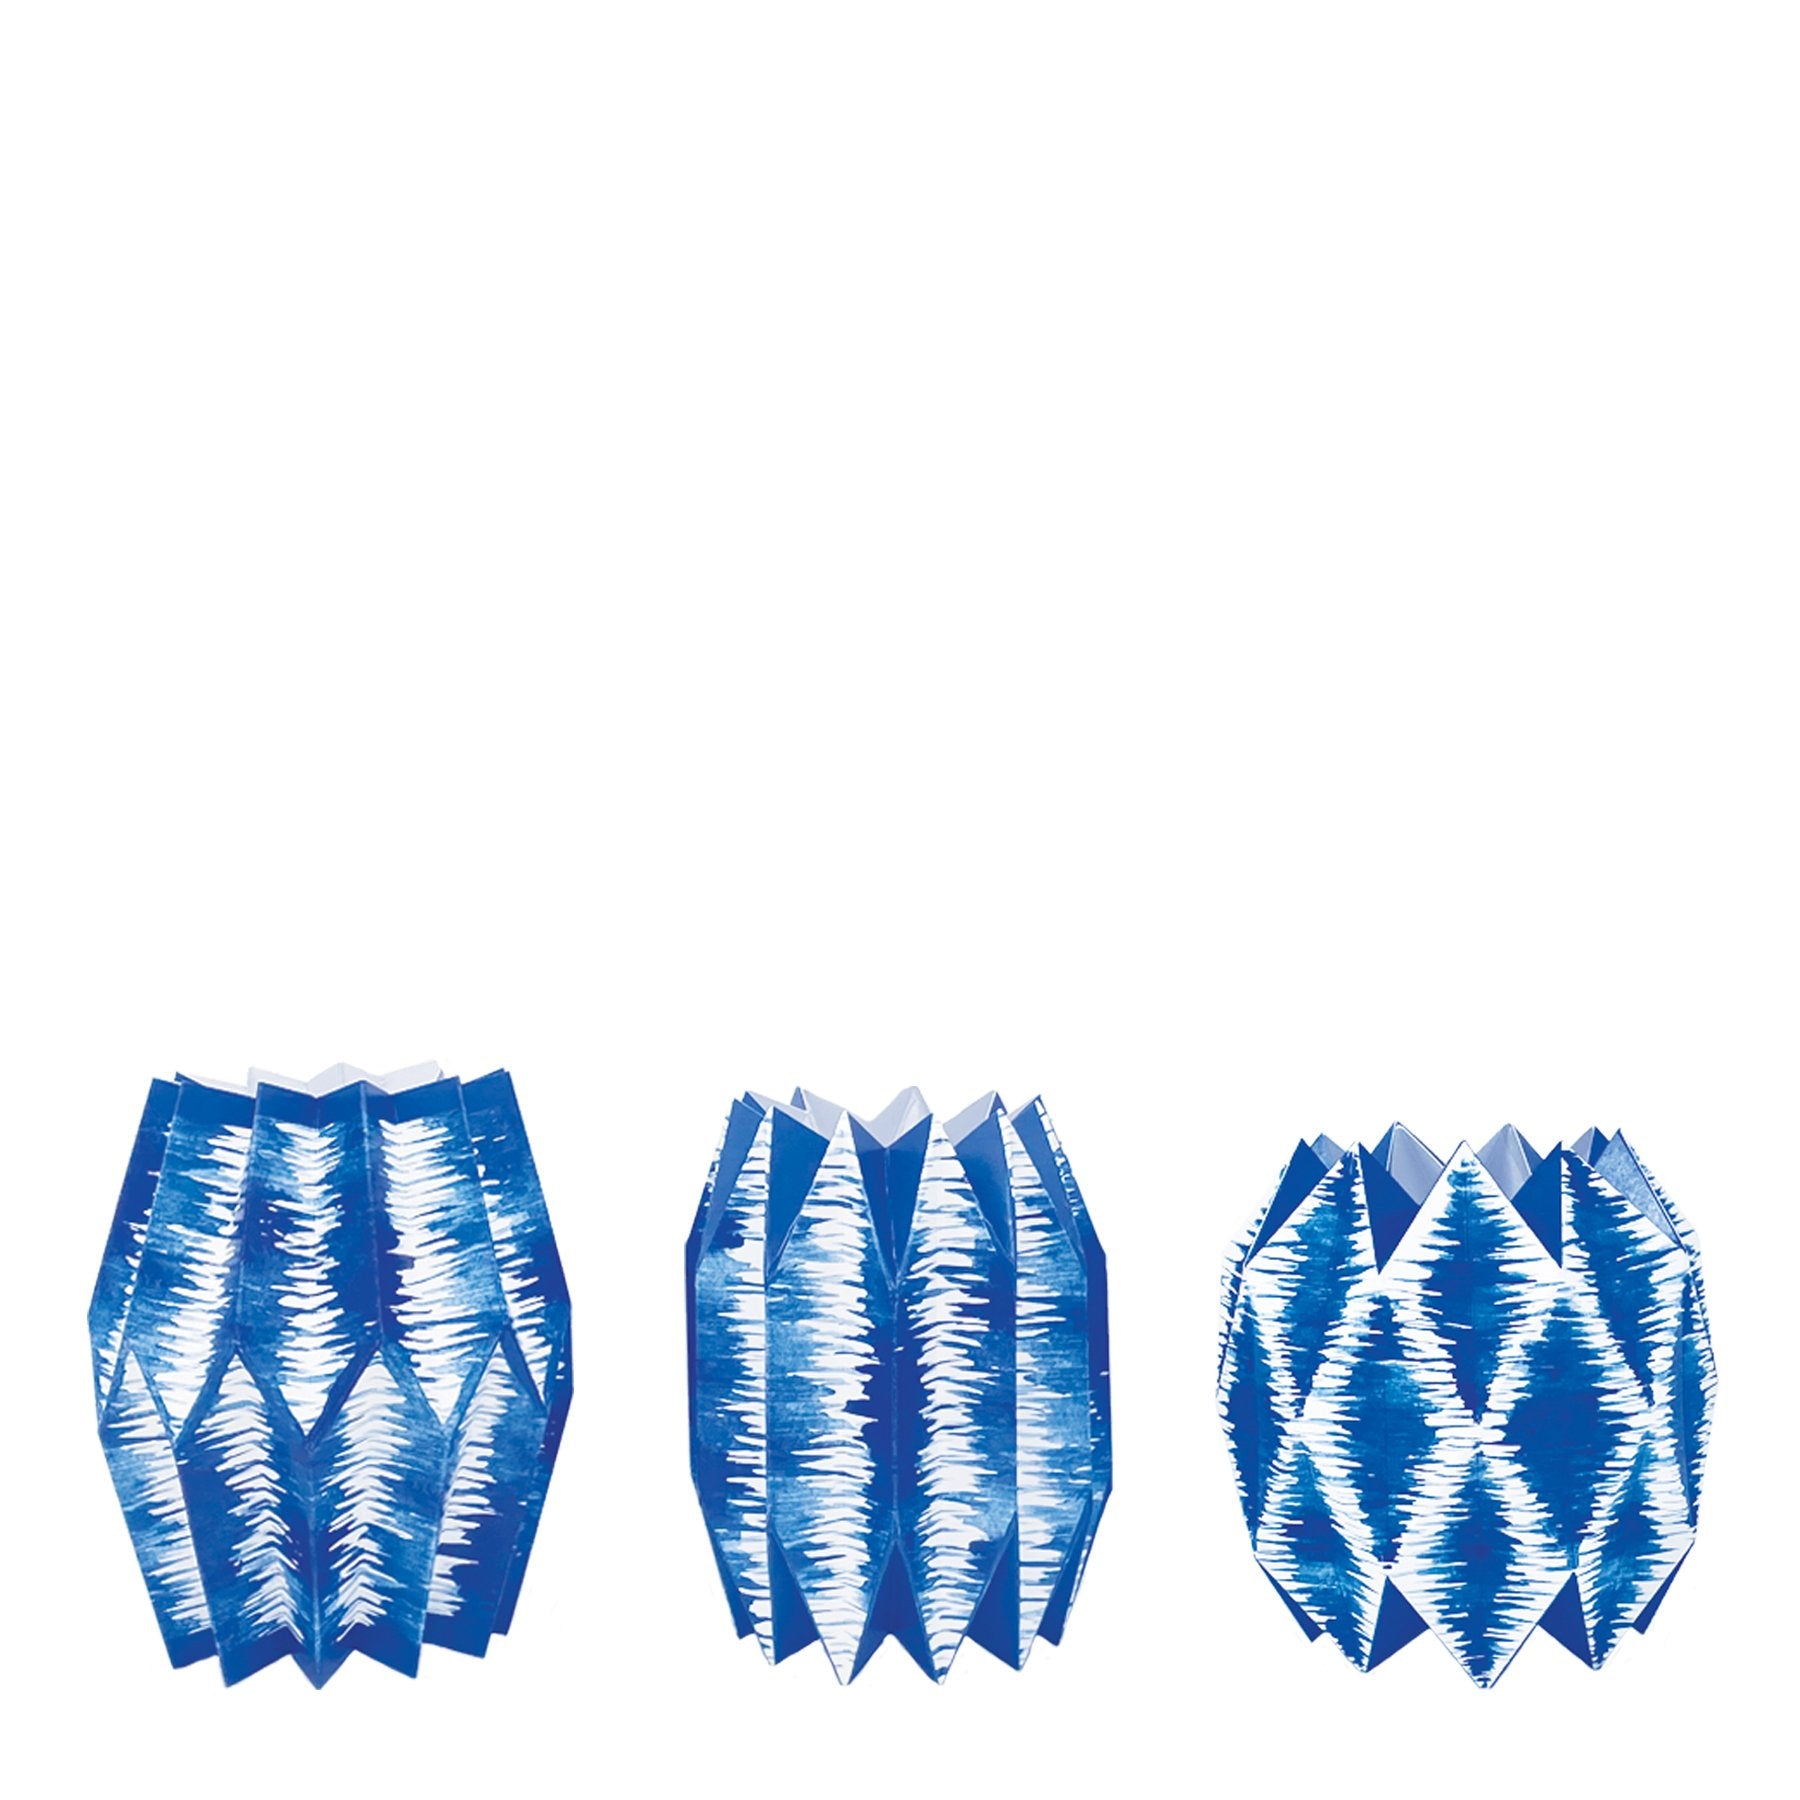 Blue ikat patterned paper sleeve vases